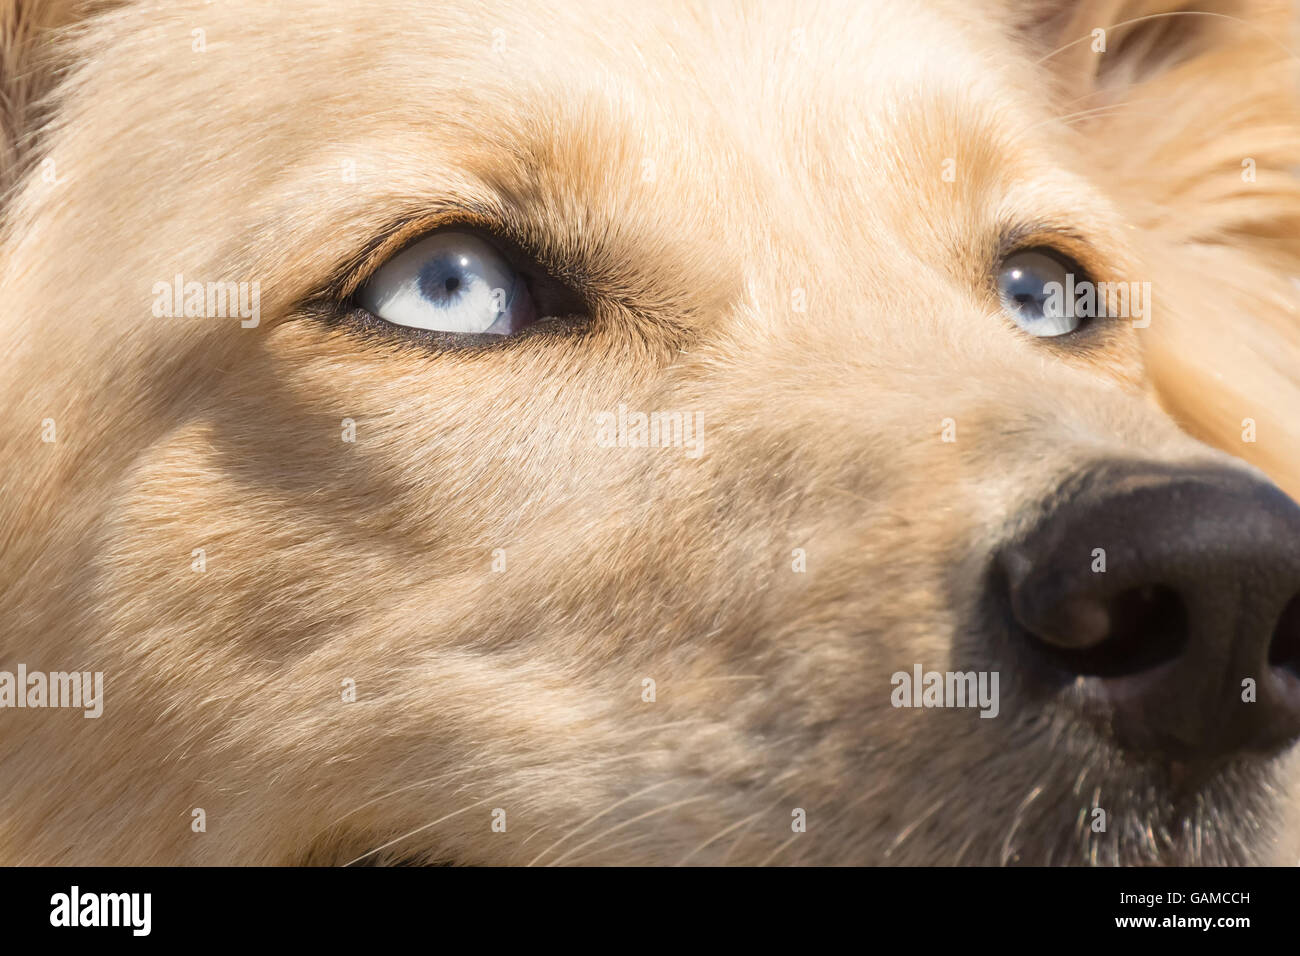 Weißer Schweizer Schäferhund Hund blaue Augen. Porträt hautnah  Stockfotografie - Alamy